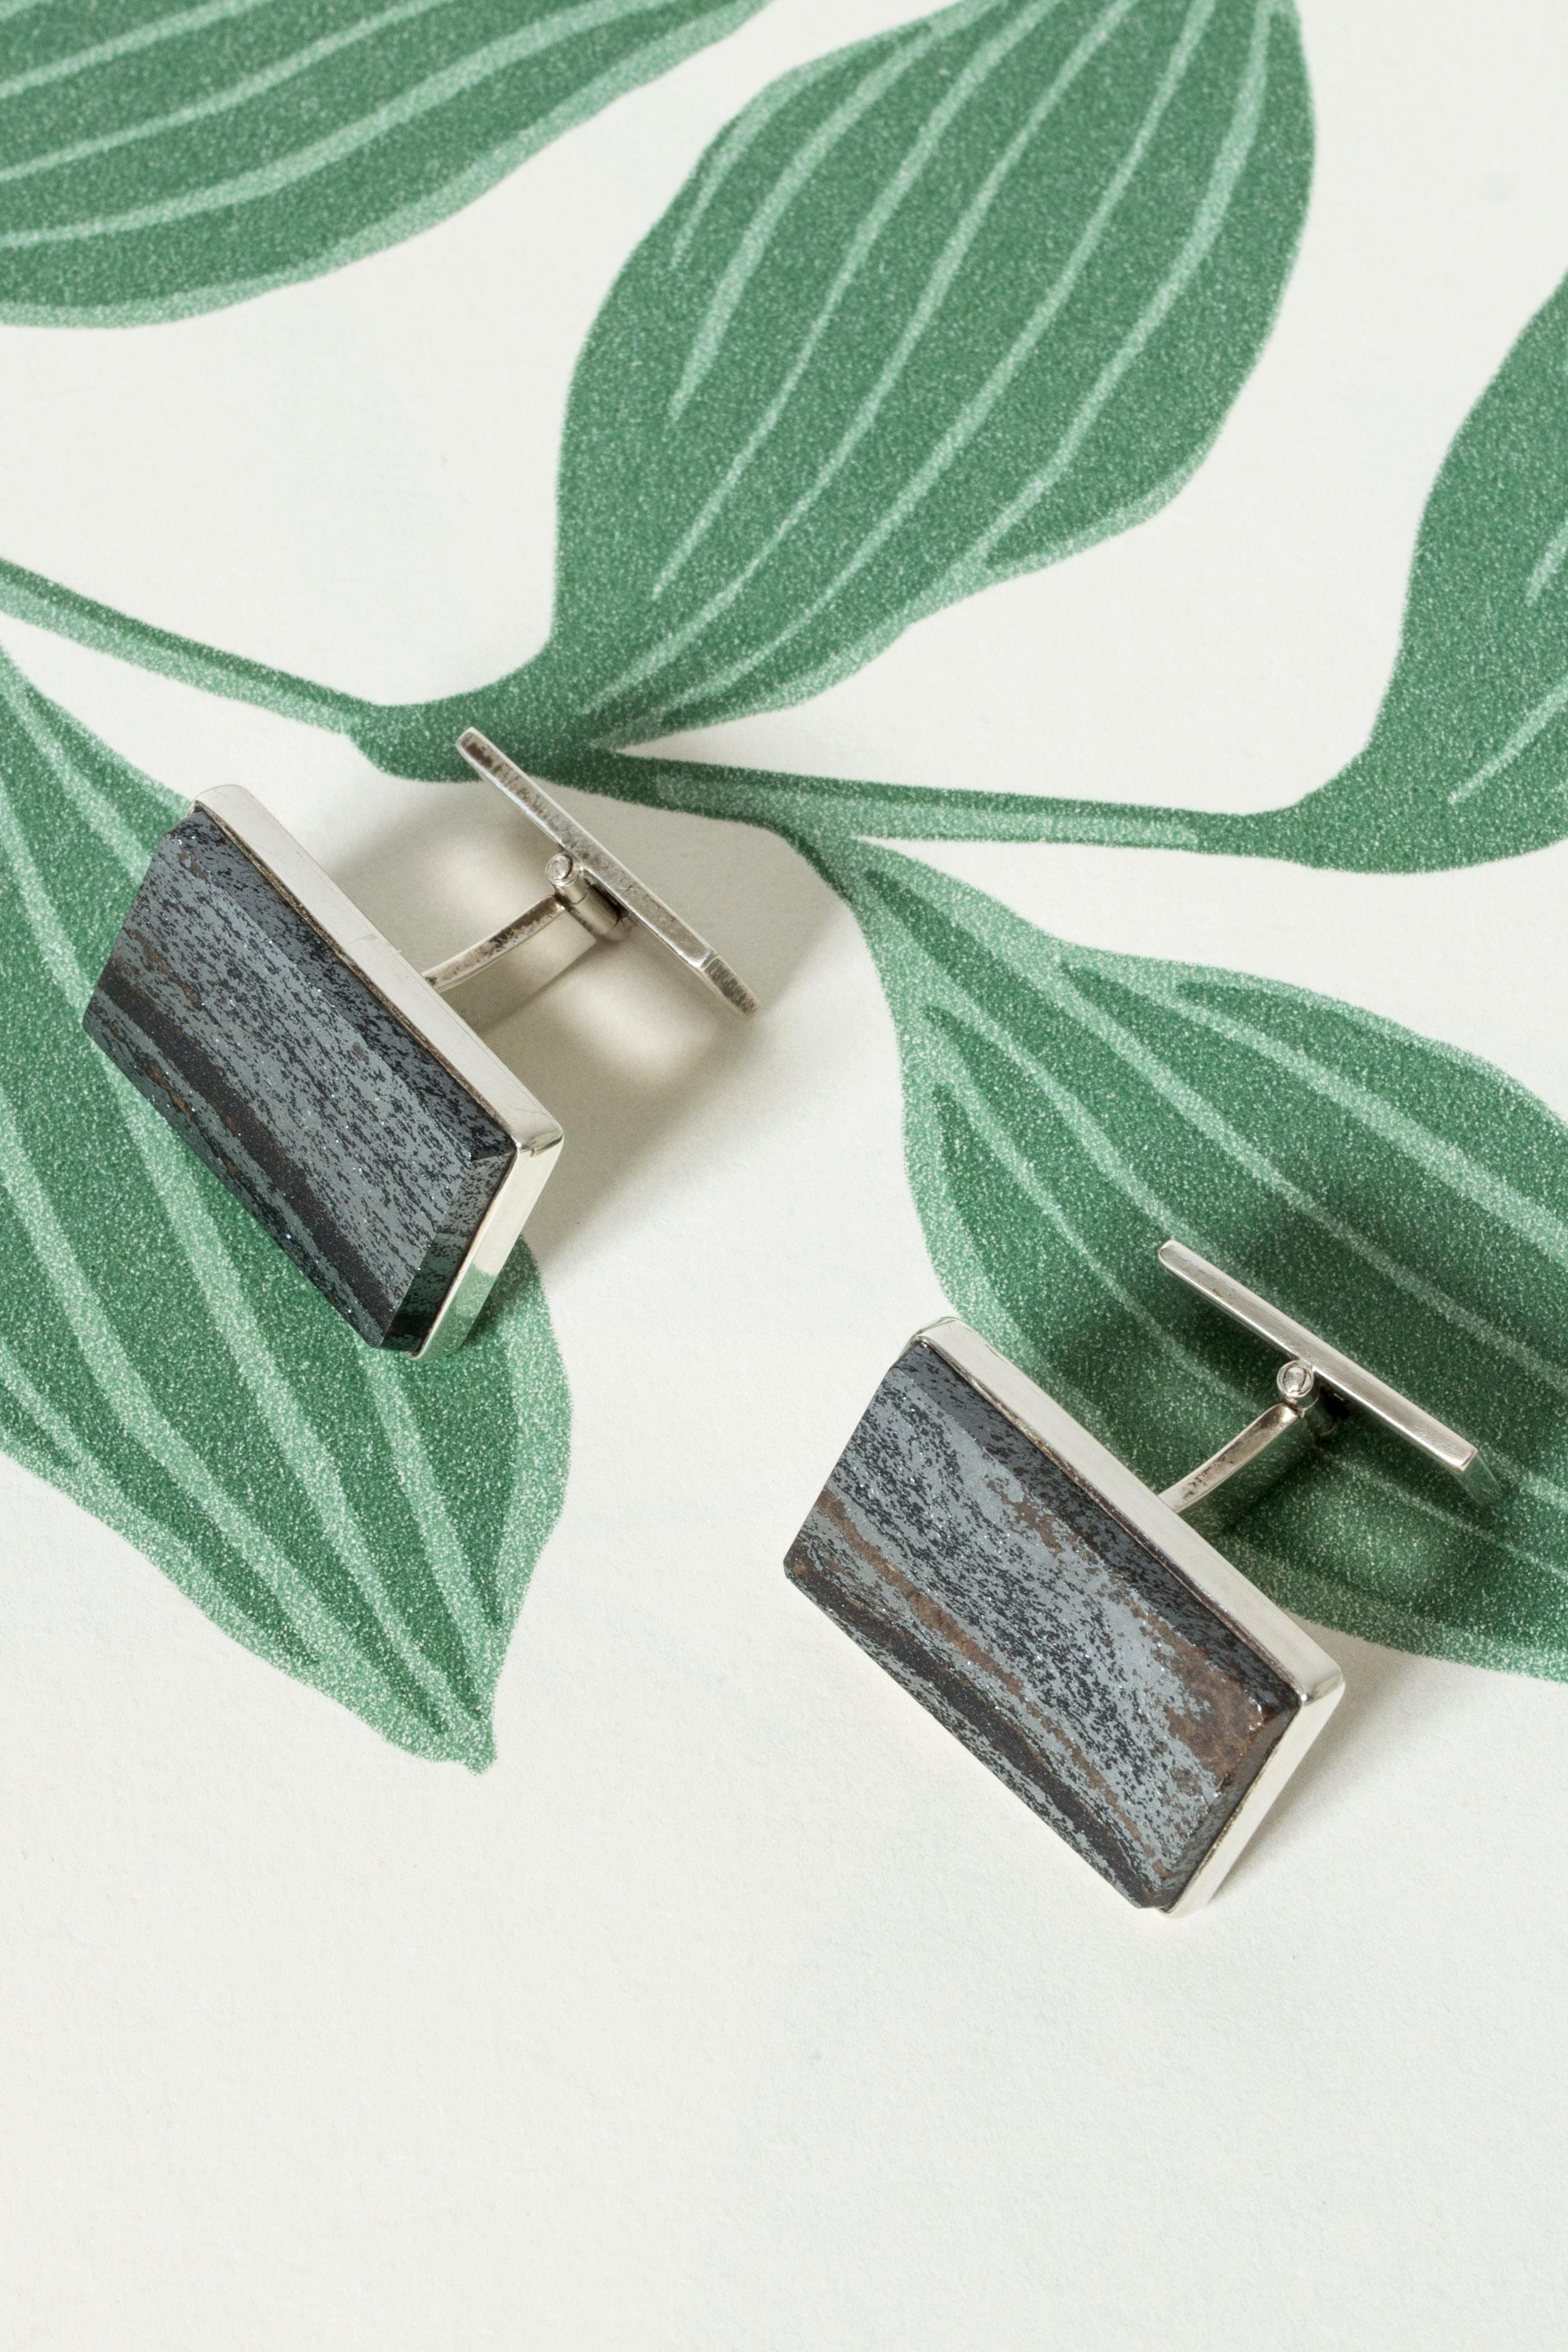 Square Cut Oversize Vintage Modernist silver cufflinks, Sweden, 1977 For Sale